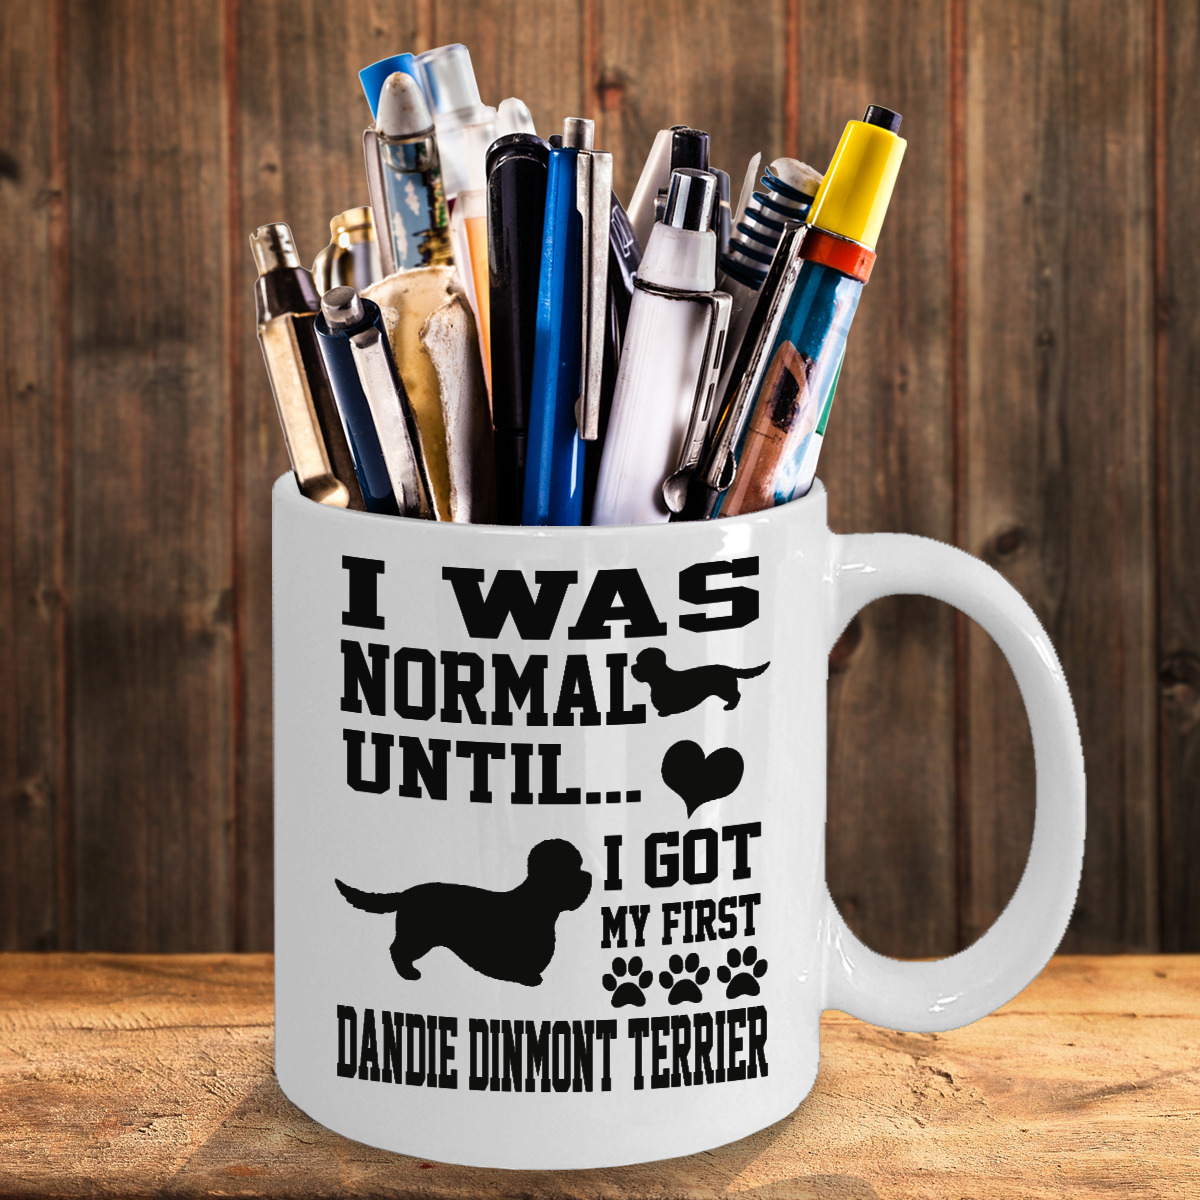 Dandie Dinmont Terrier Dog,Dandie Dinmont Terrier,Dandie Hindlee Terrier,Cup,Mug